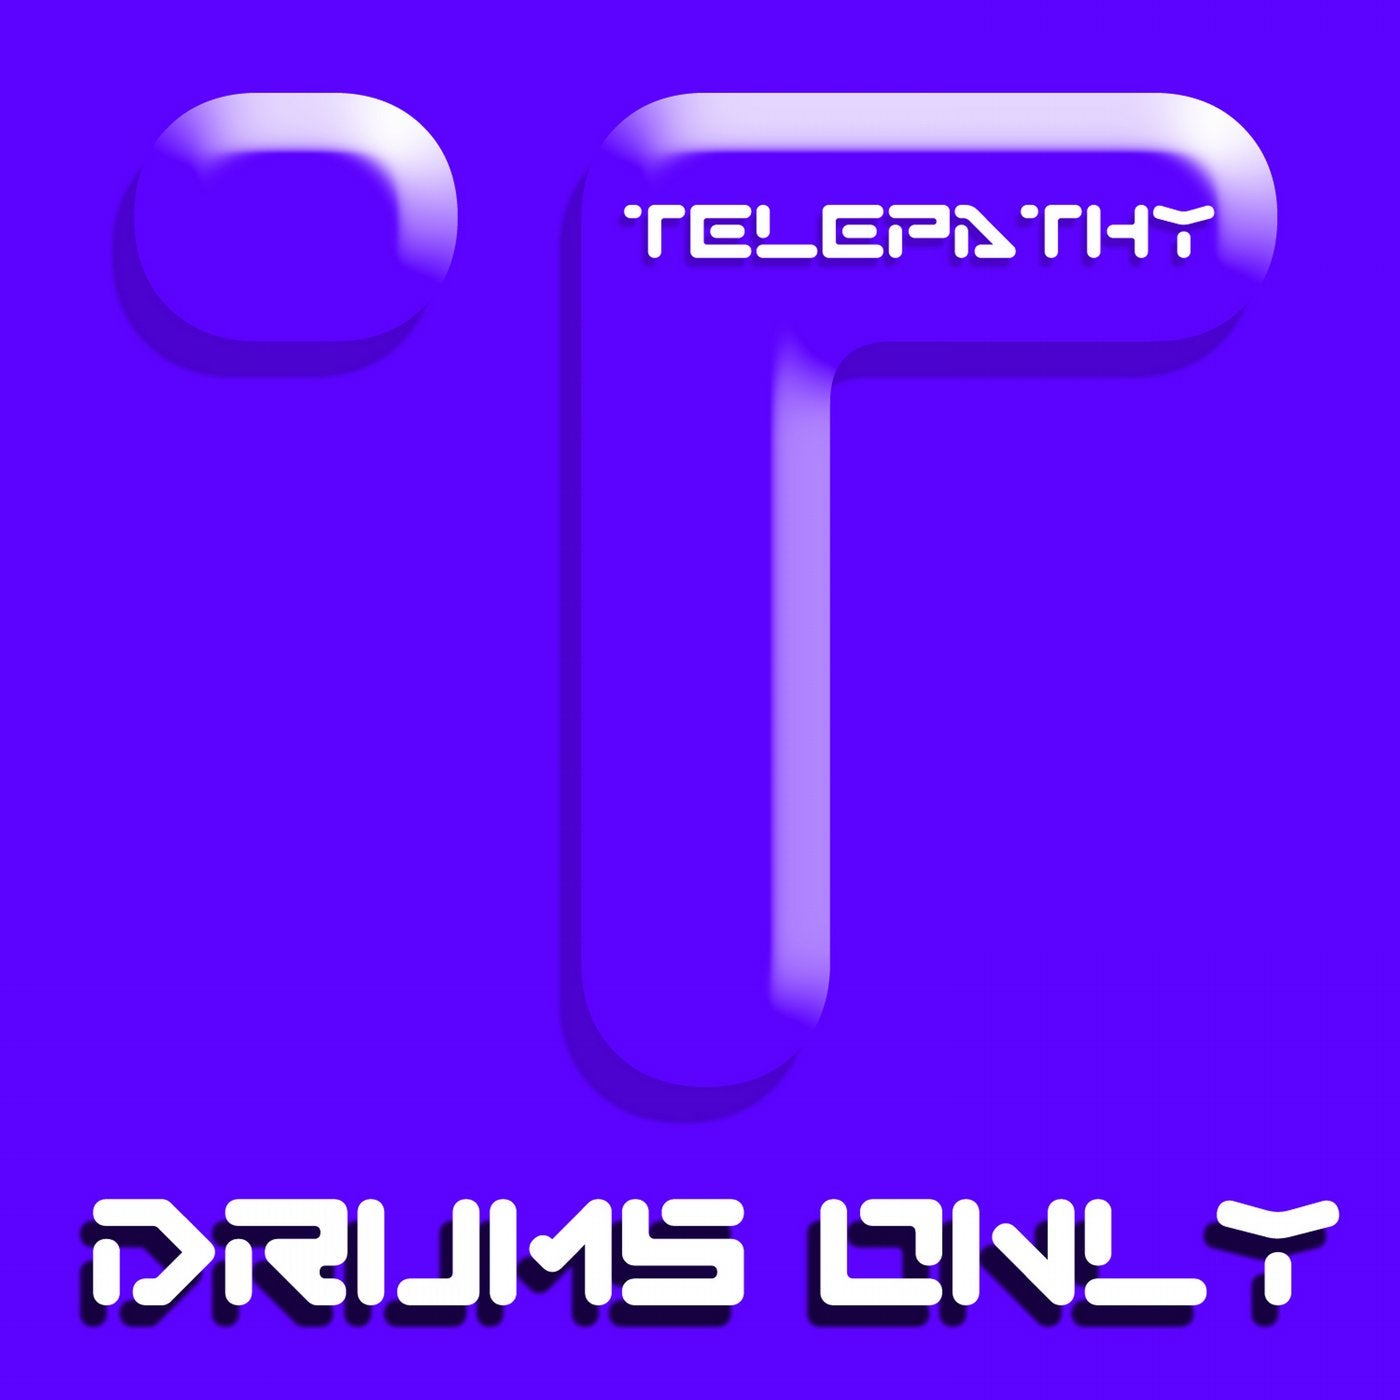 Beats Drums & Percussion Vol 3